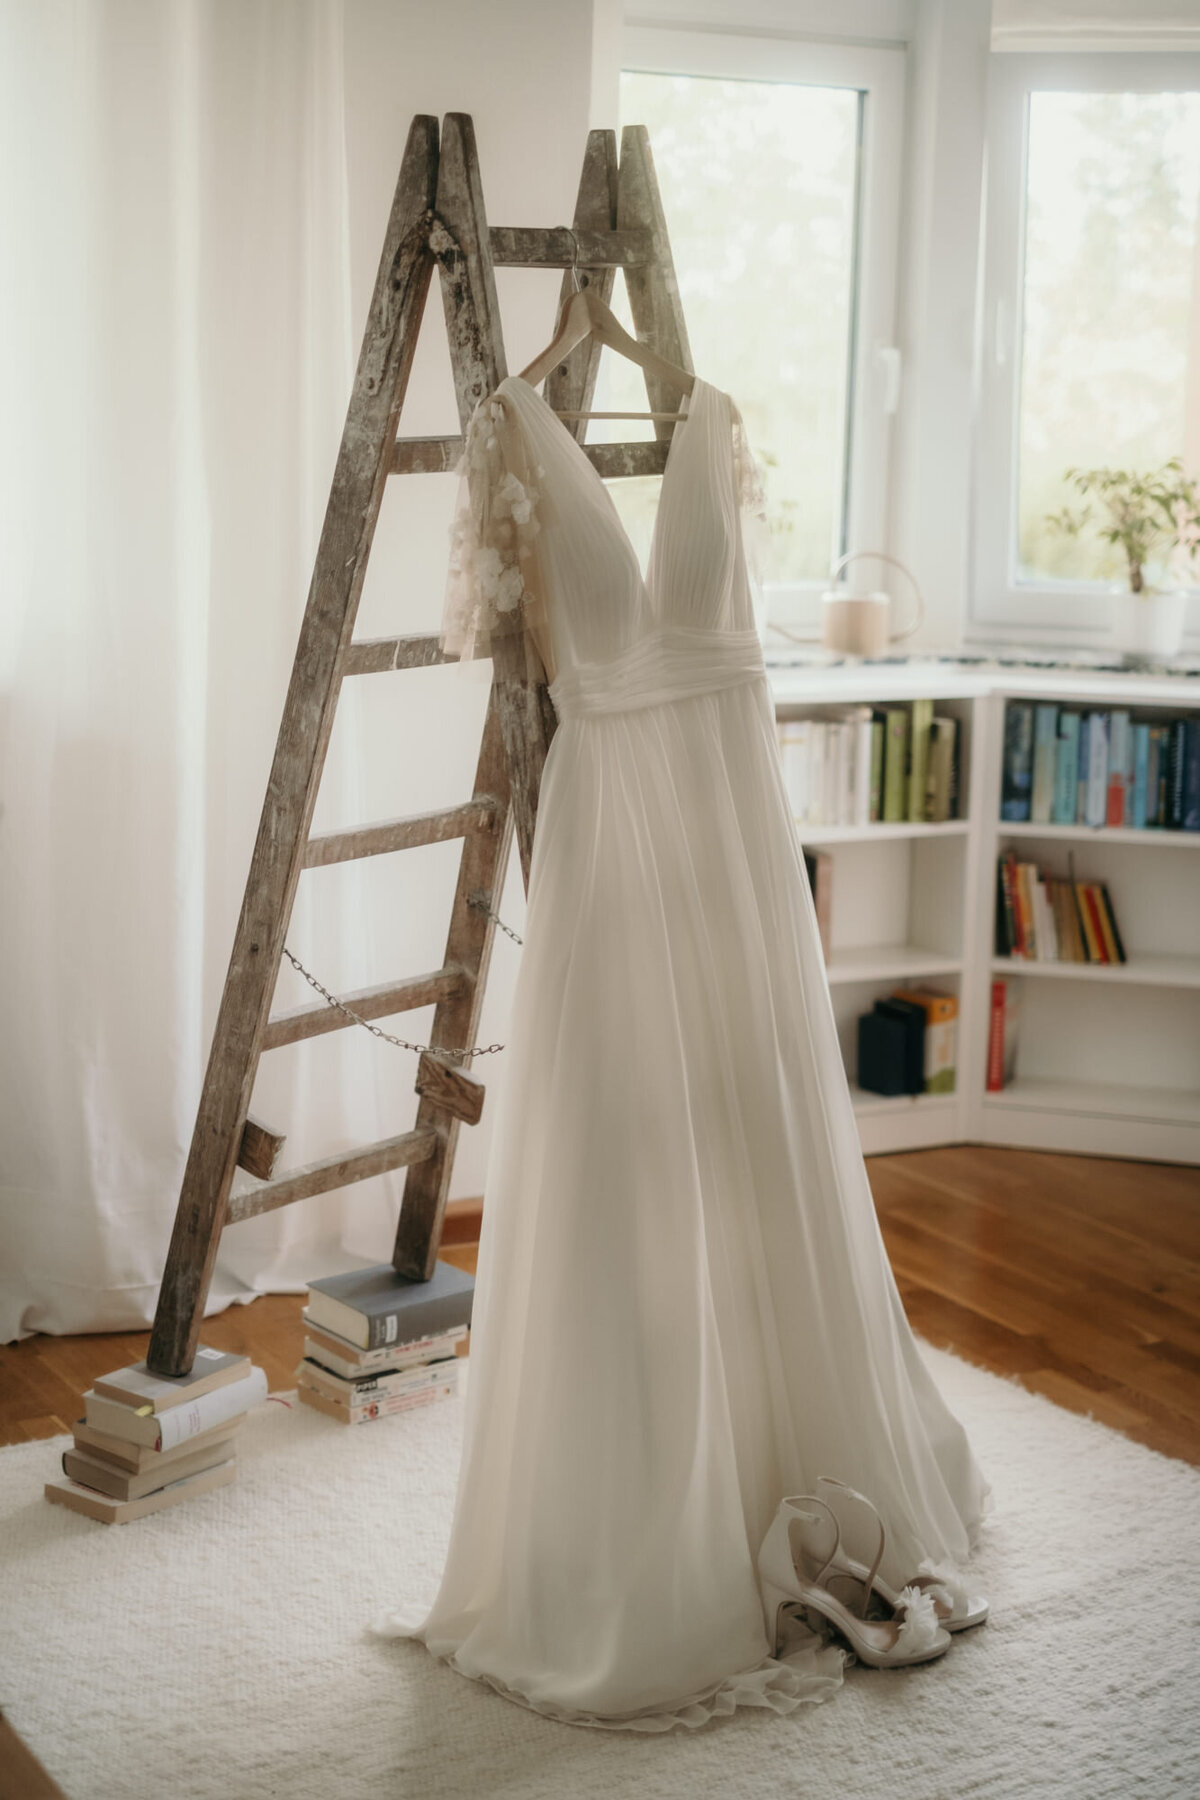 Das Brautkleid hängt an einer Holzleiter, deren Füße auf Büchern stehen.